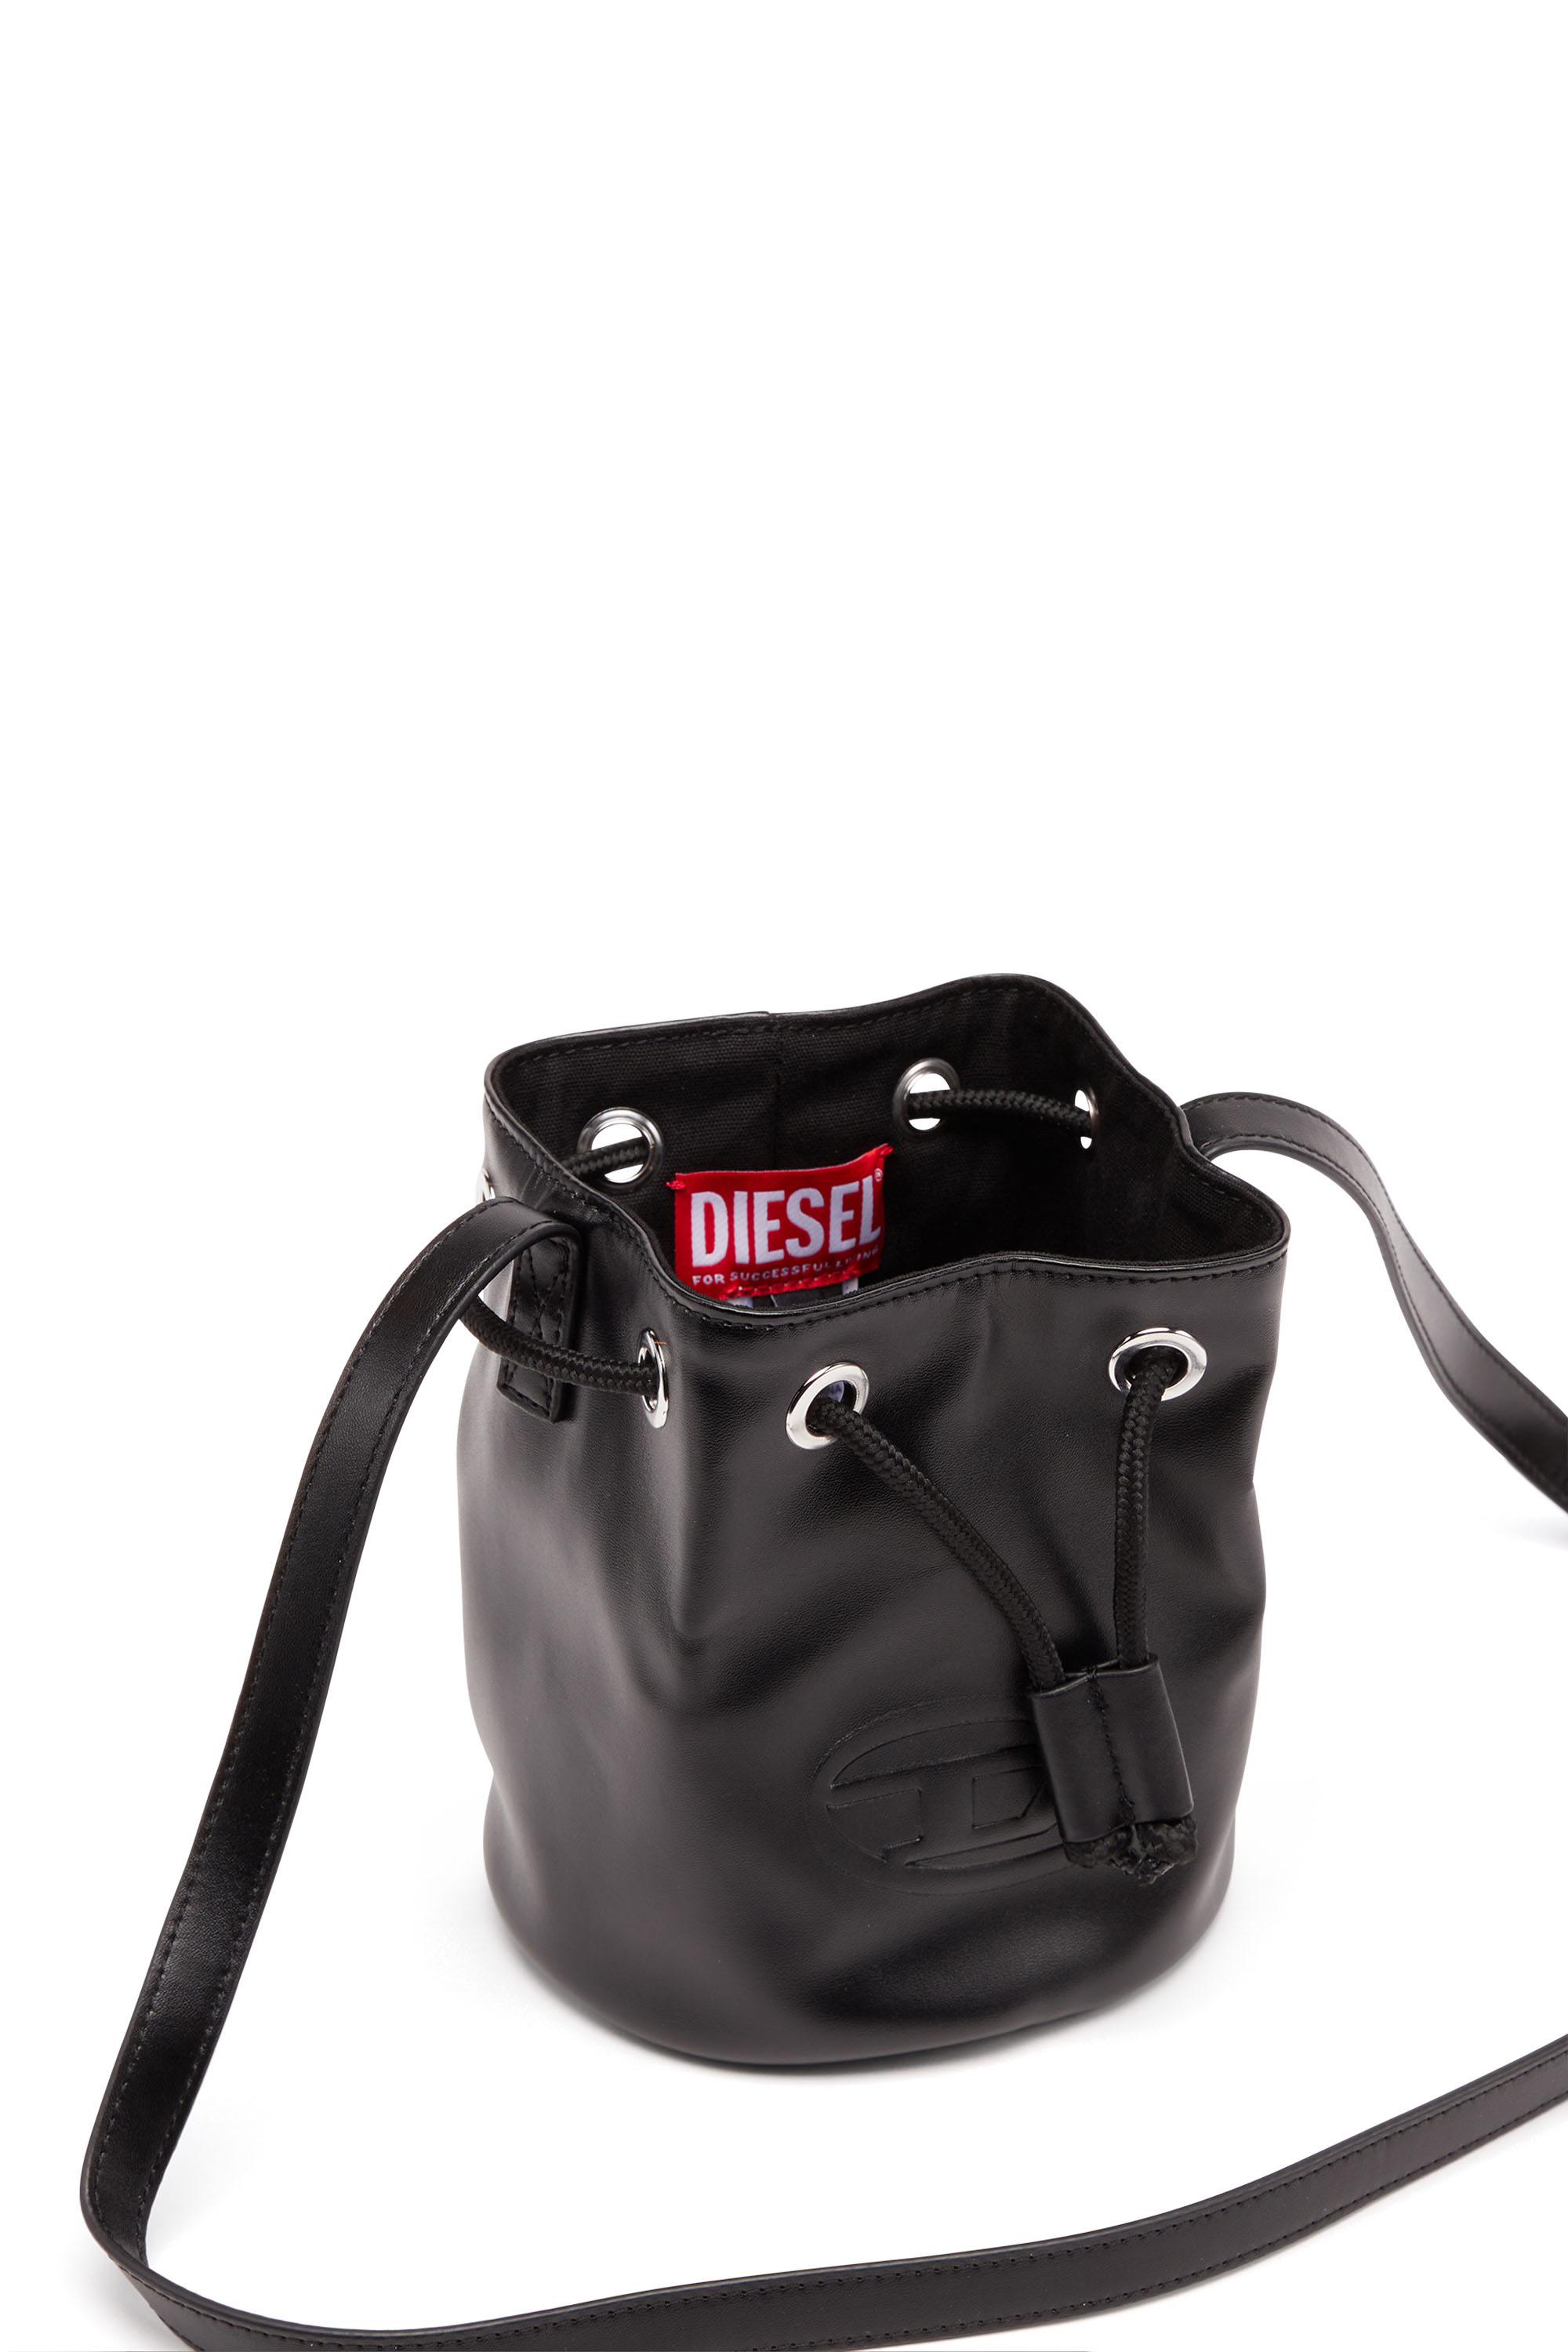 Diesel - WELLTY, Noir - Image 4